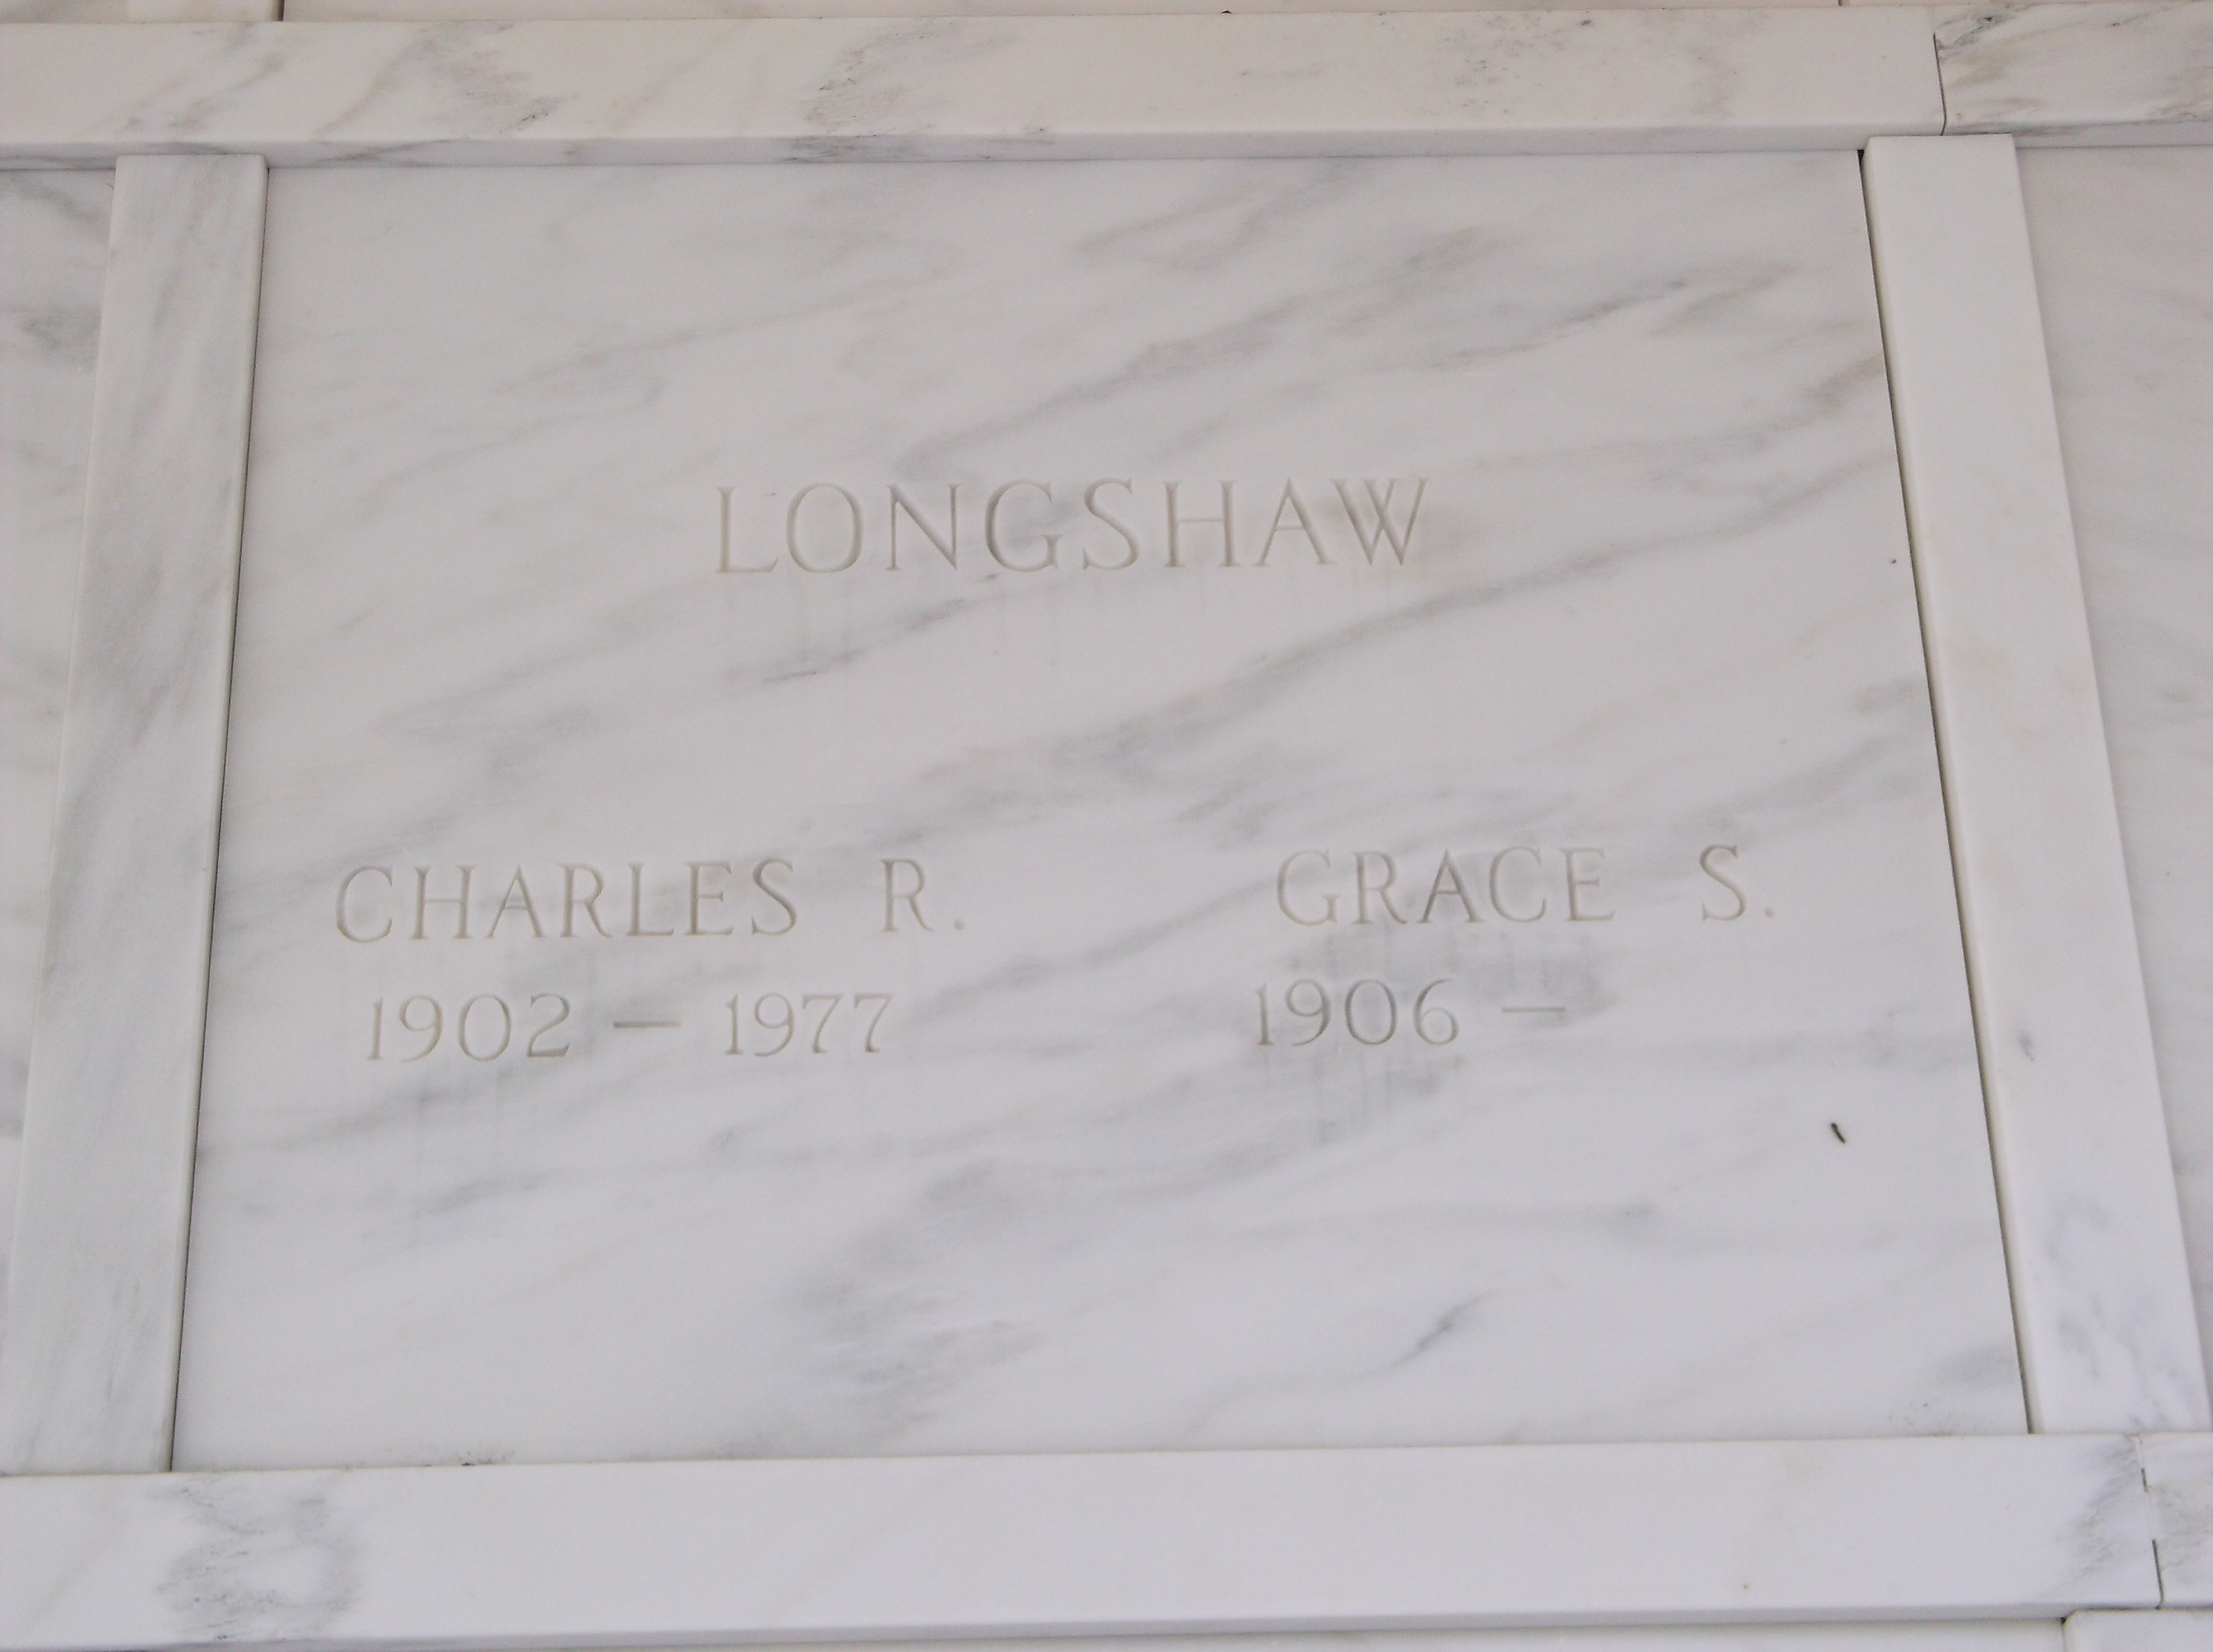 Charles R Longshaw